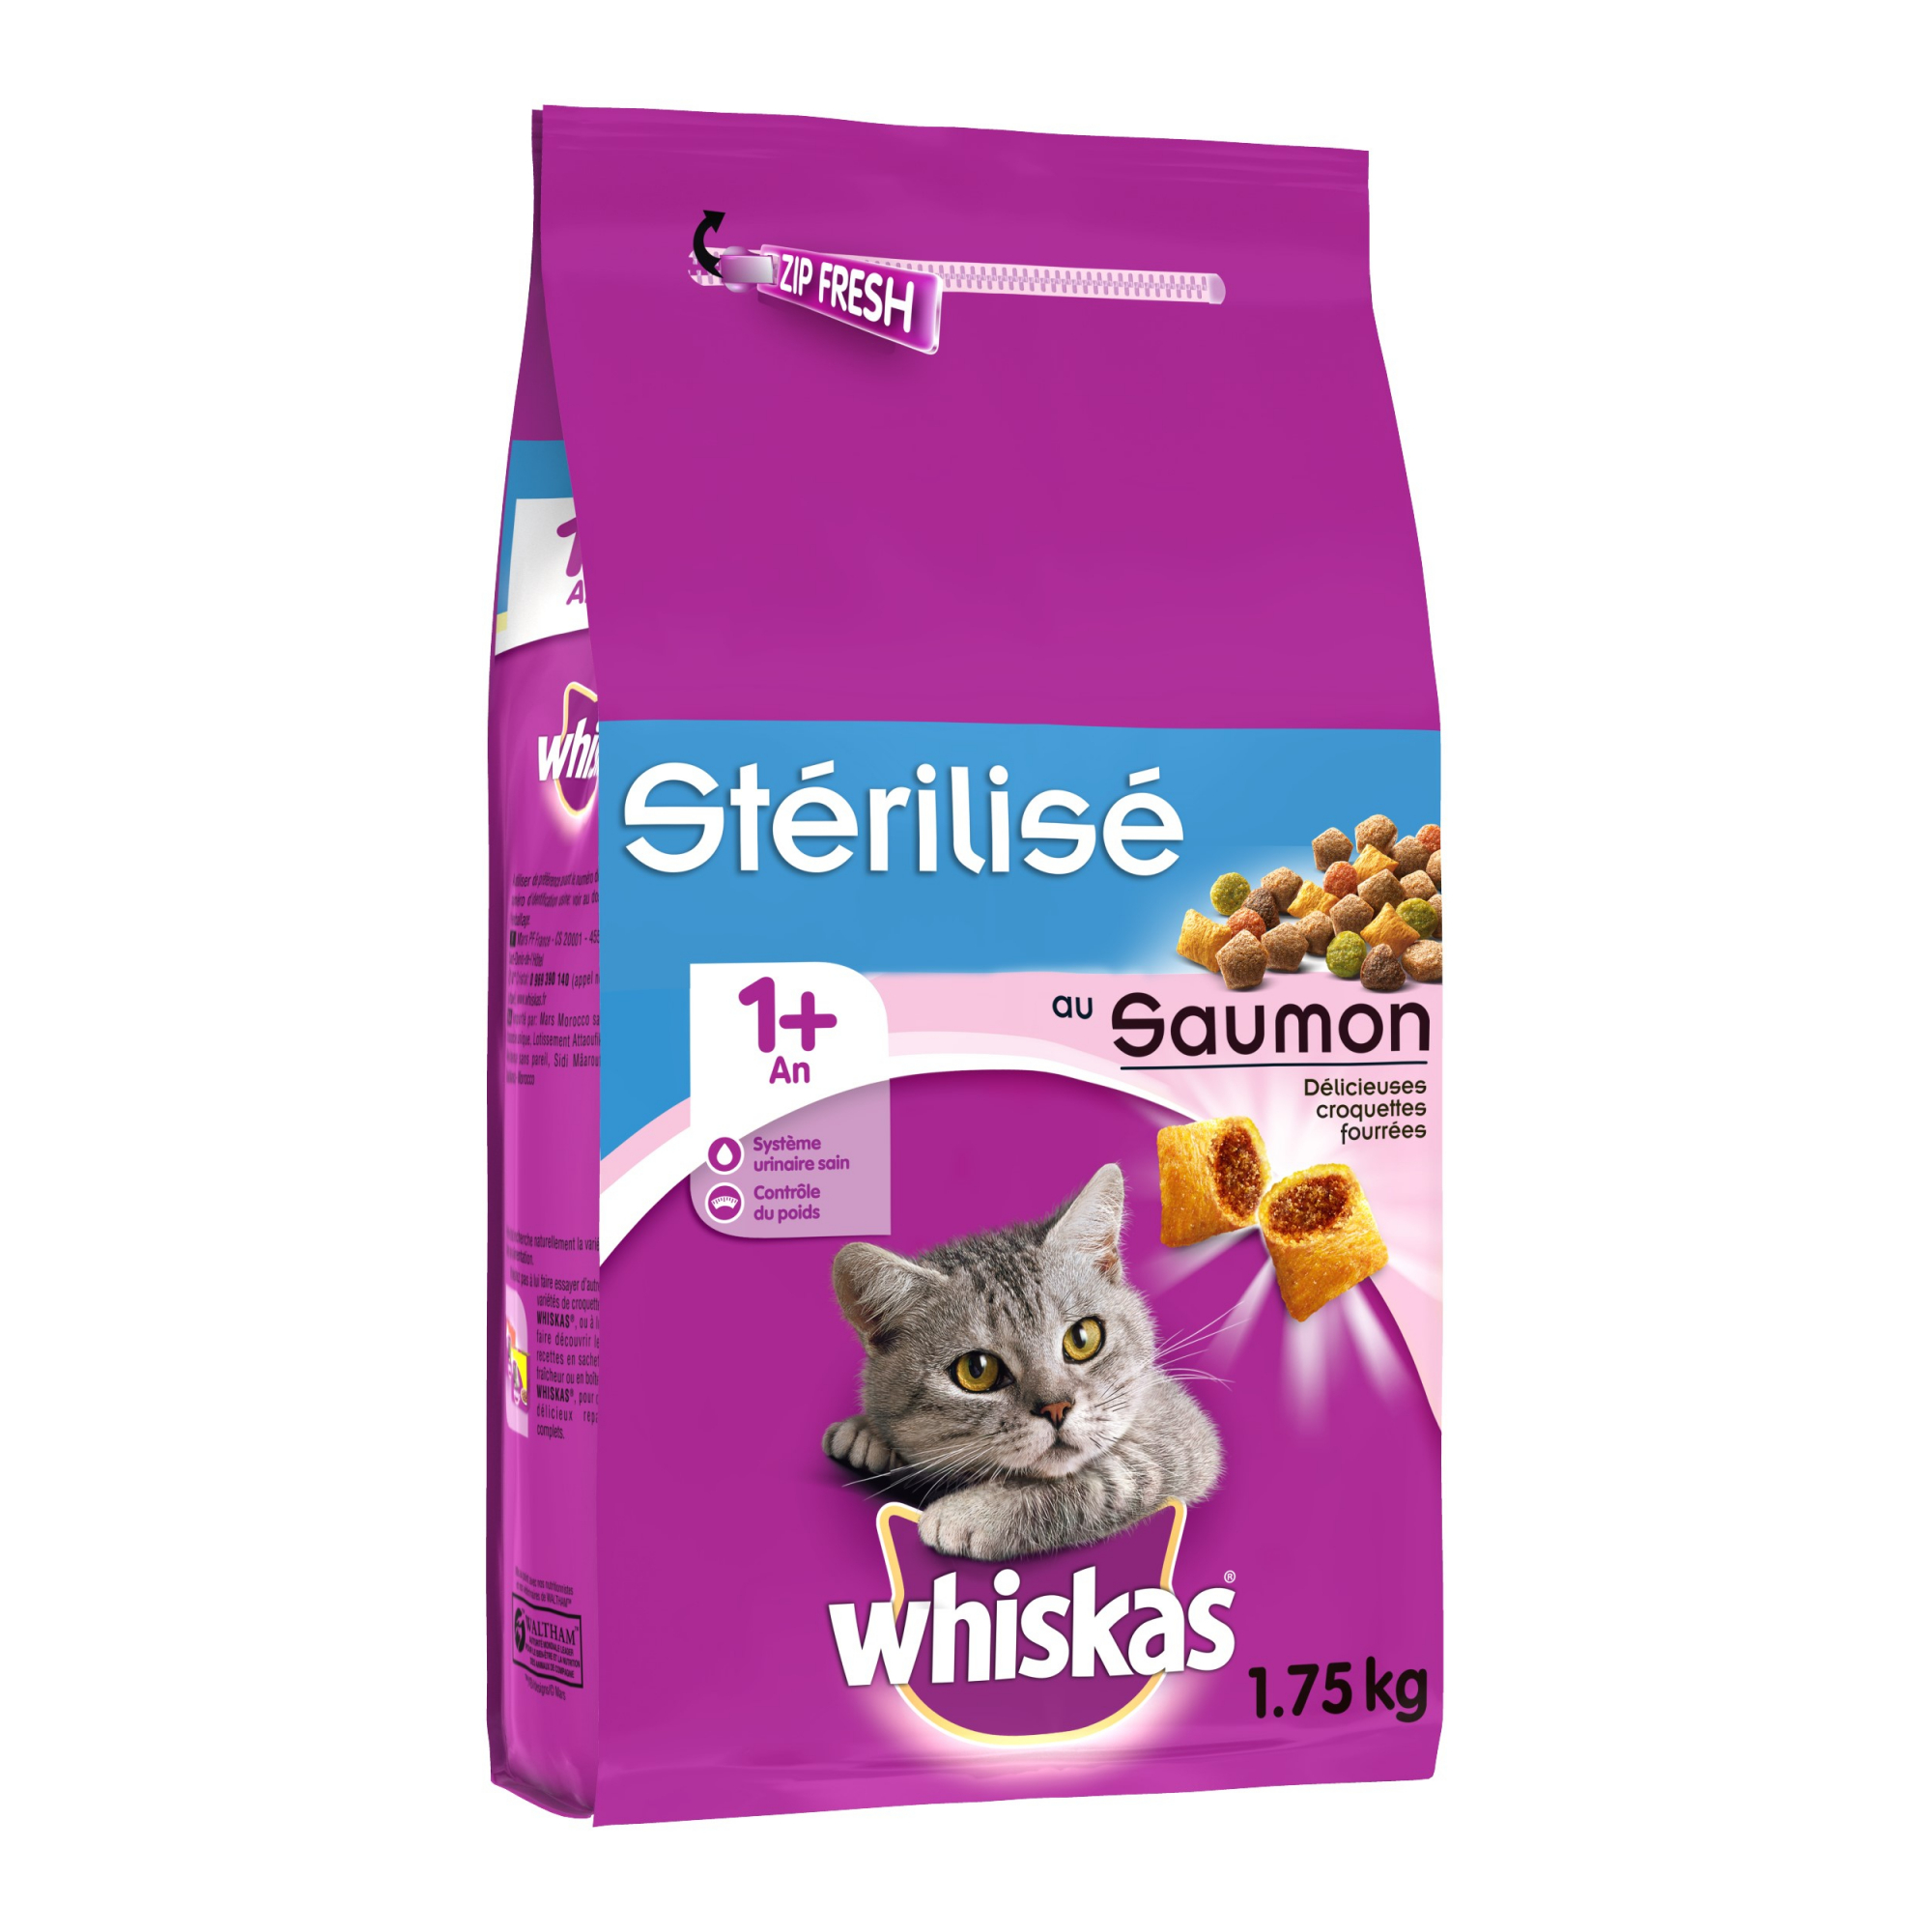 Whiskas 1+ Adult für sterilisierte Katzen 1+ Huhn oder Lachs